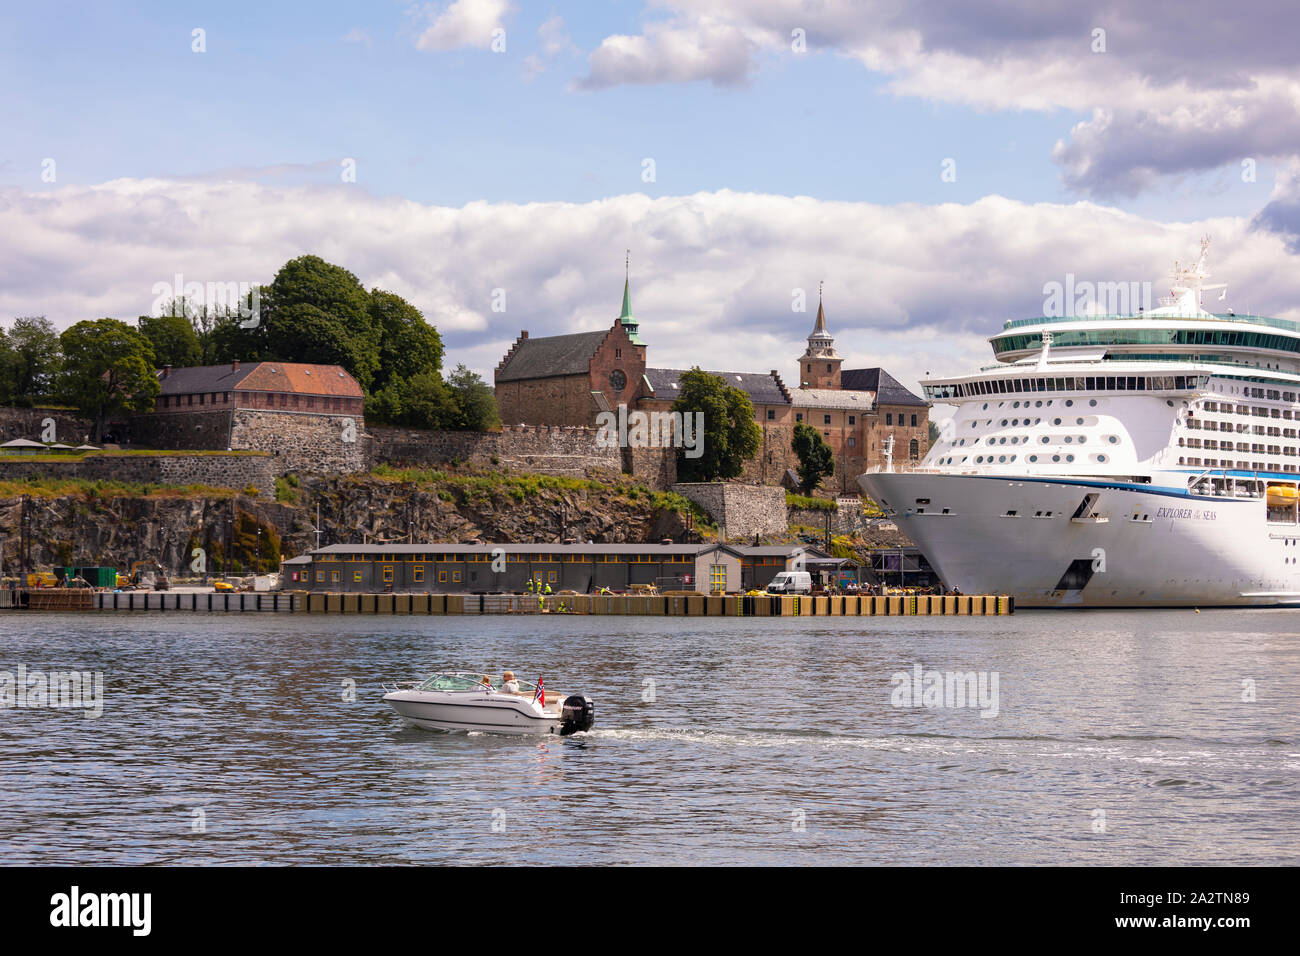 OSLO, Norvegia - Piccola imbarcazione passa il Explorer dei mari a Royal Caribbean Cruise nave ormeggiata presso la Fortezza di Akershus Oslo waterfront. Foto Stock